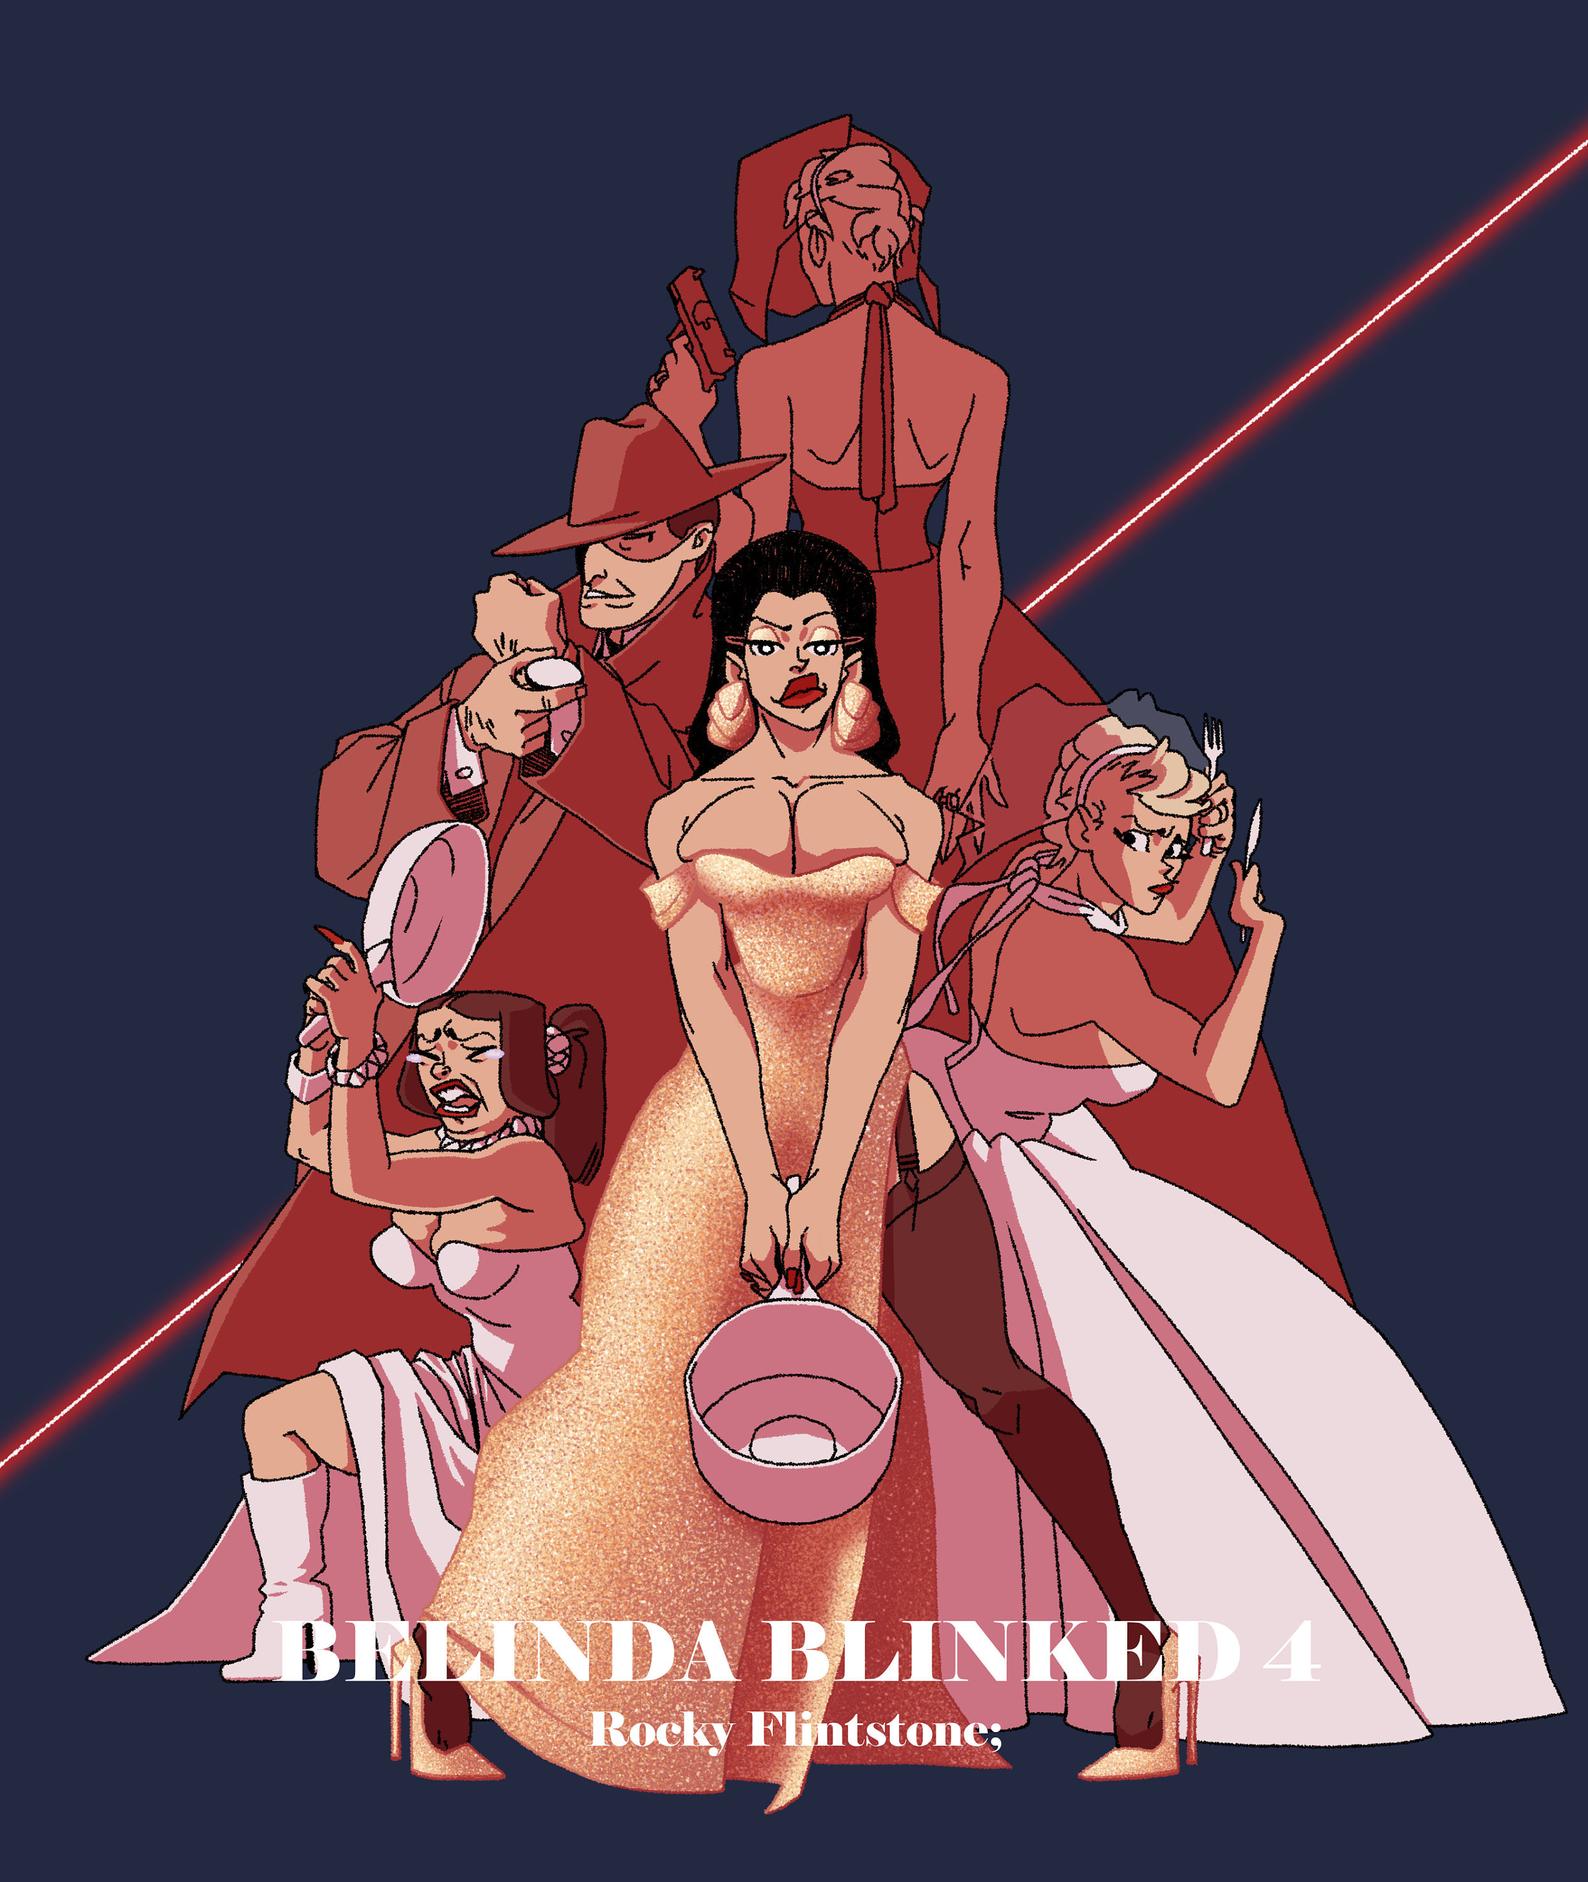 Belinda Blinked 4 poster